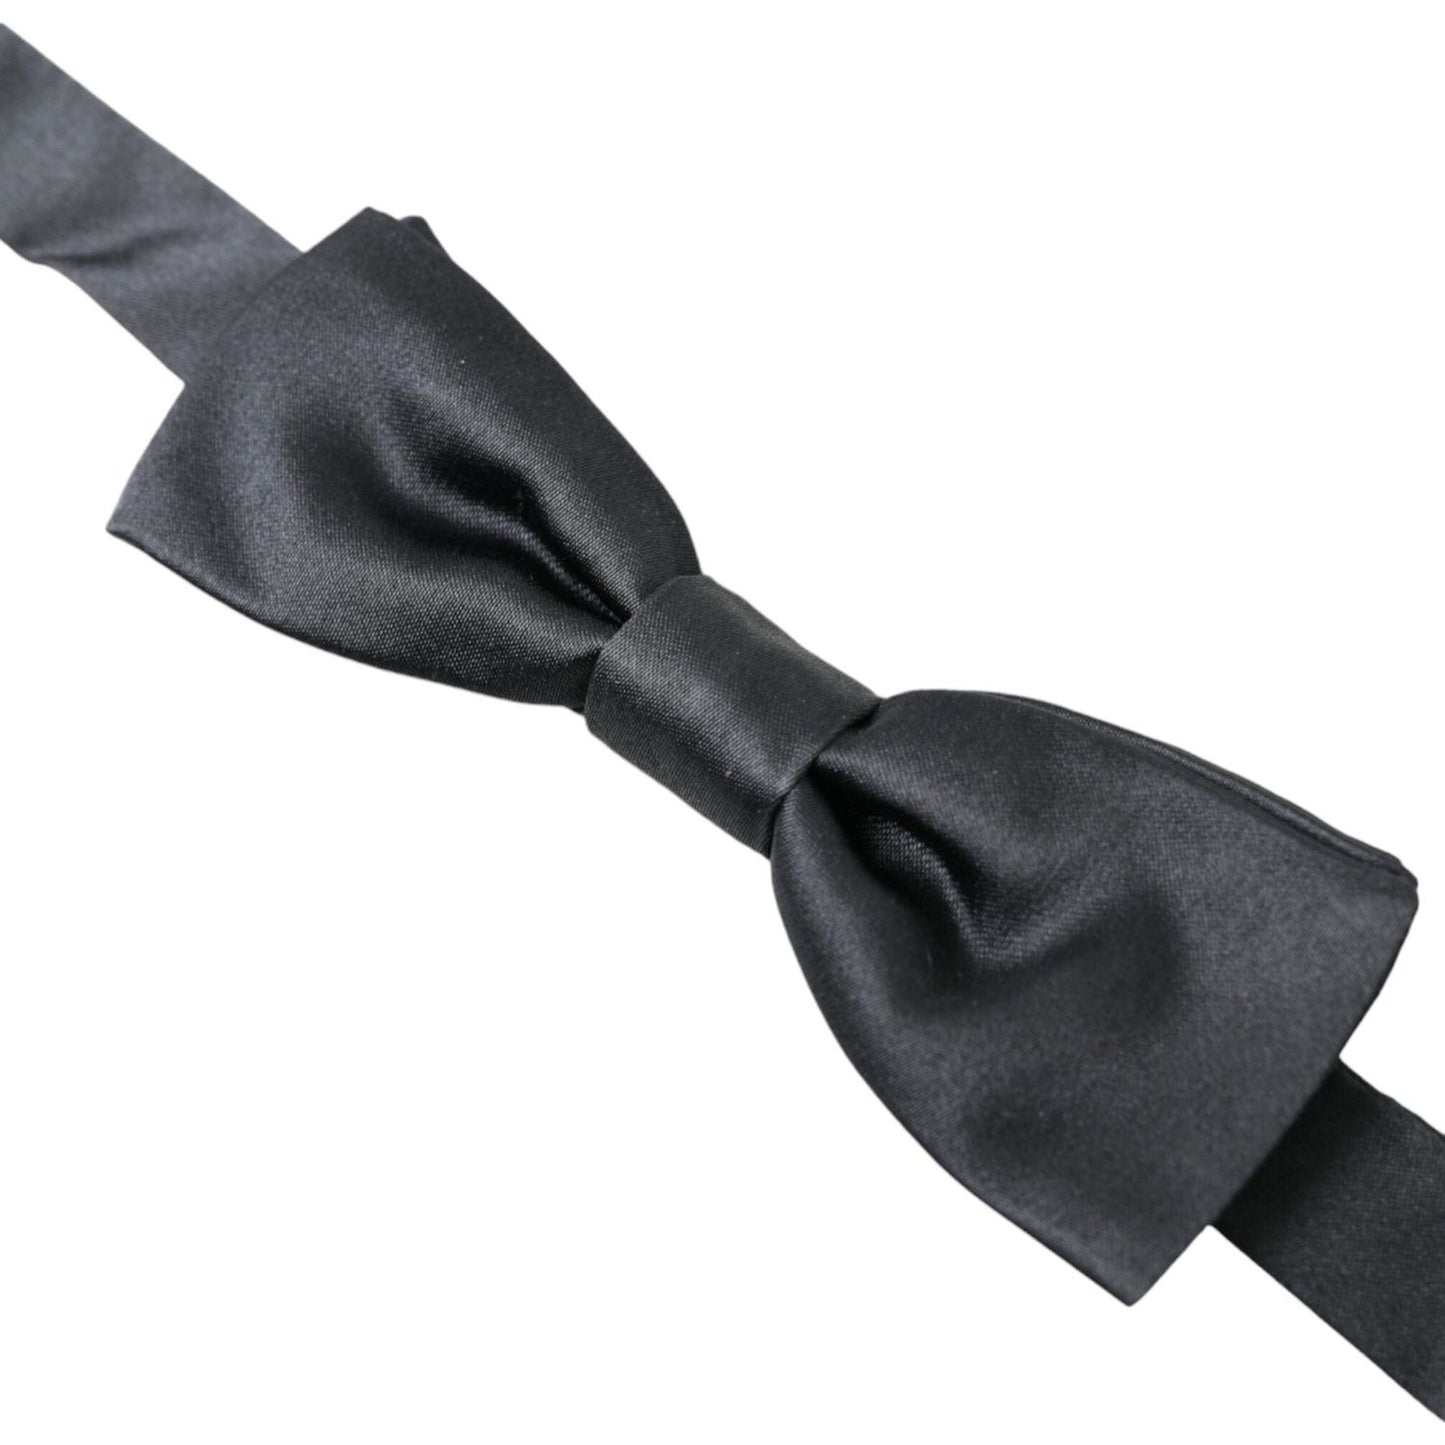 Elegant Anthracite Gray Silk Bow Tie Dolce & Gabbana